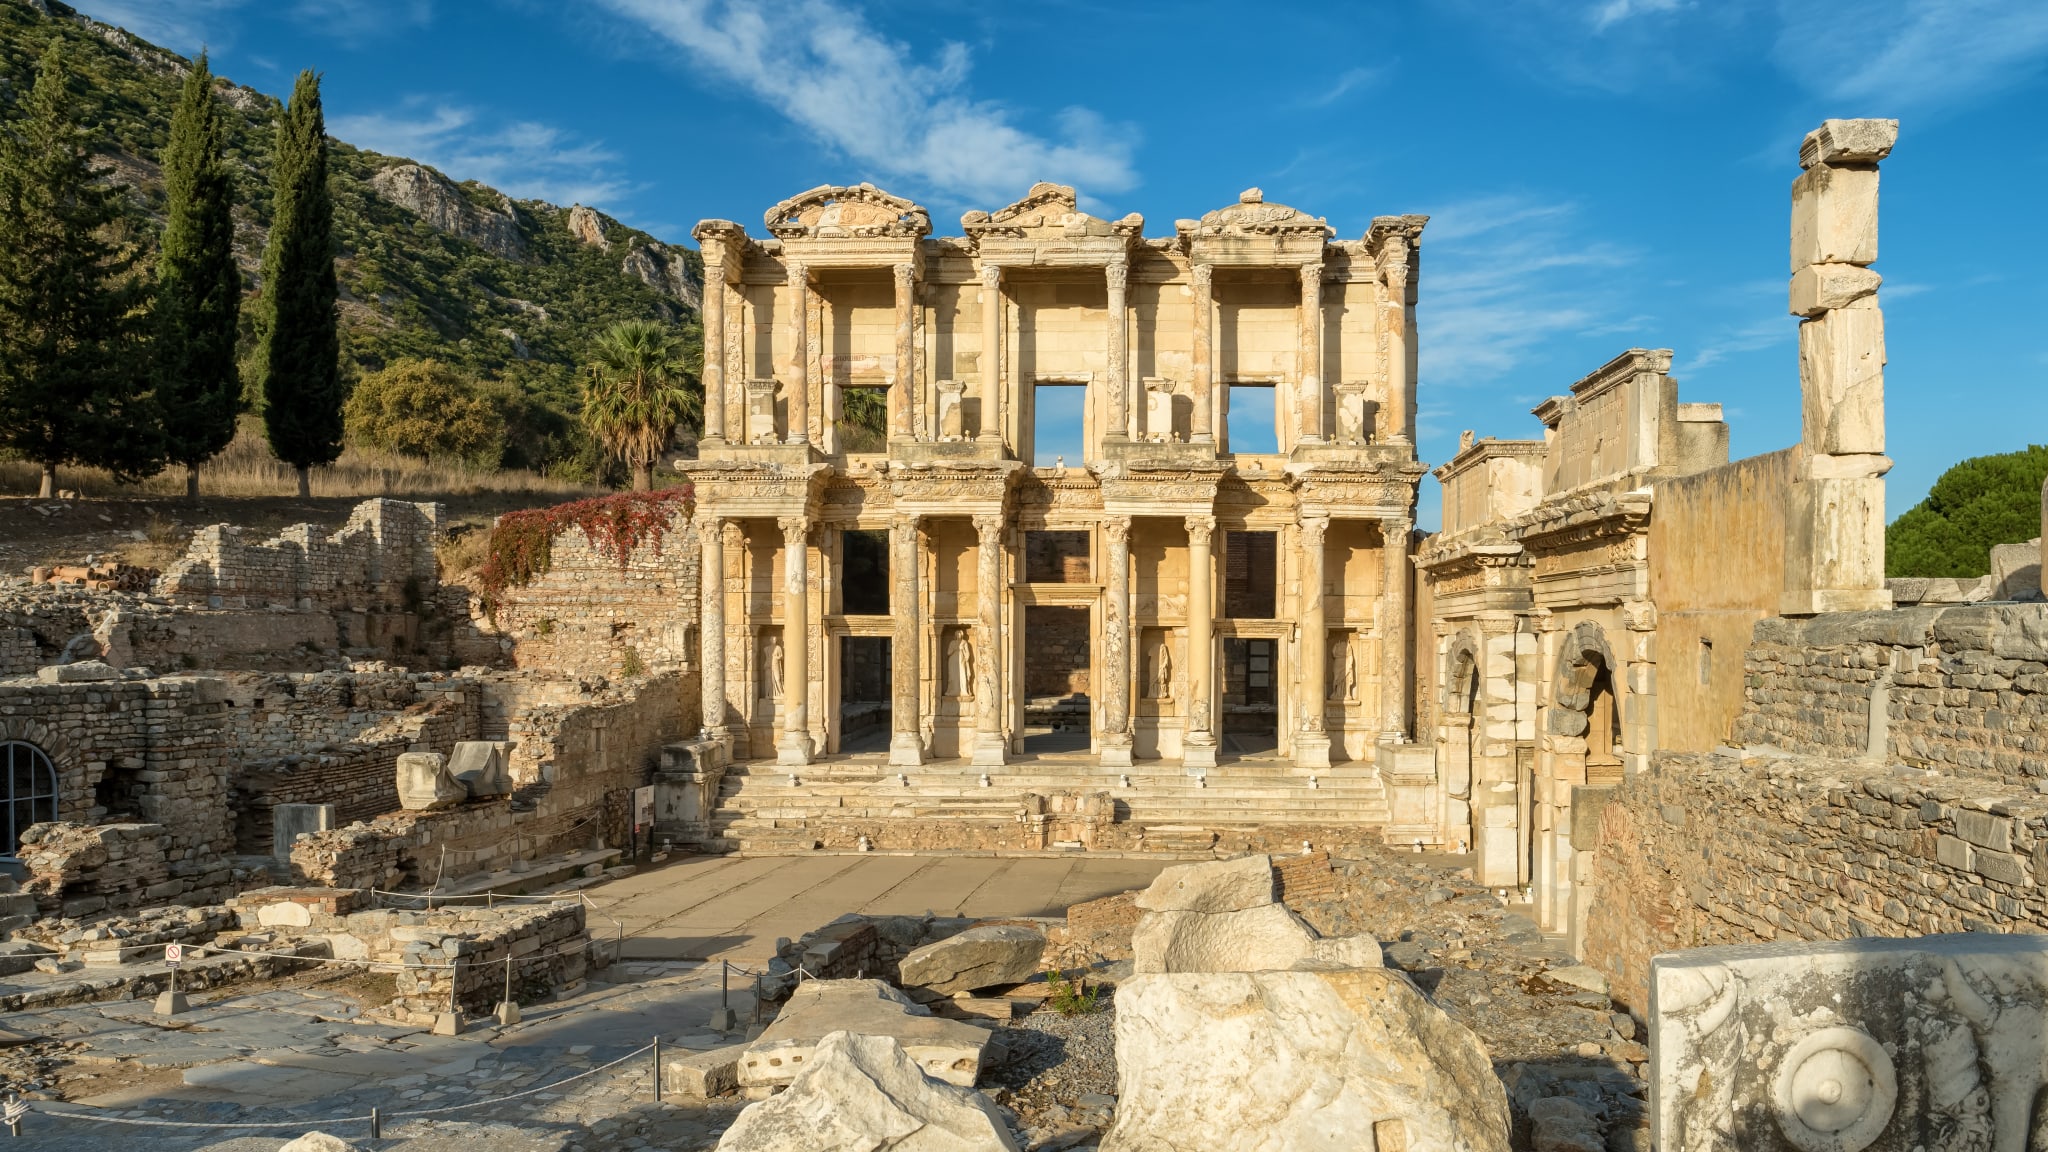 Celsus Bibliothek in der alten Stadt Ephesus nahe Selcuk, Türkei